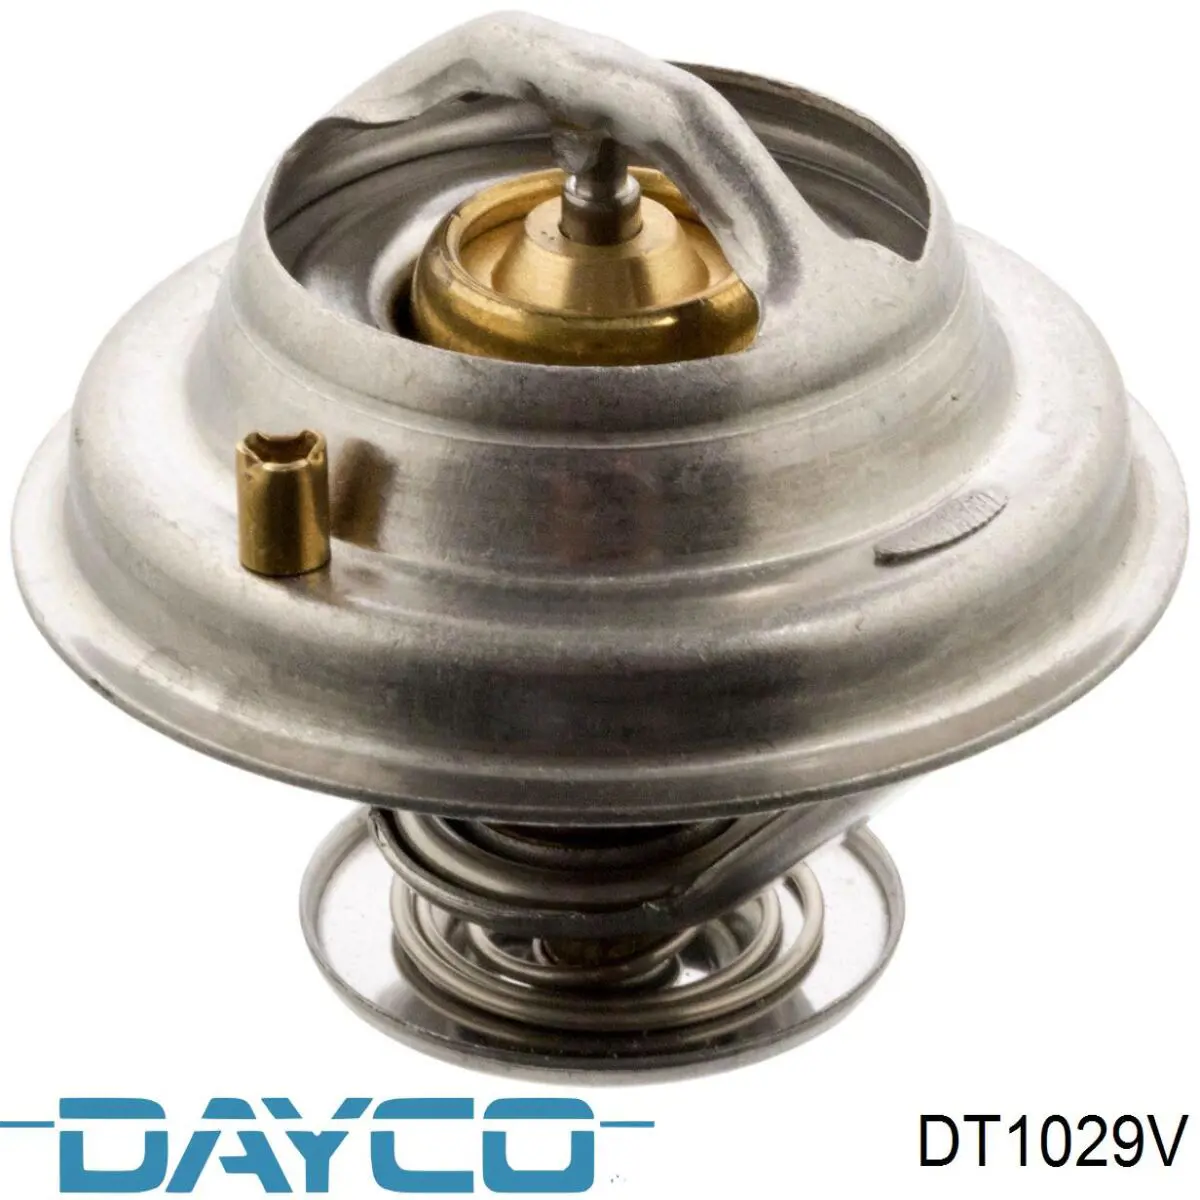 DT1029V Dayco termostato